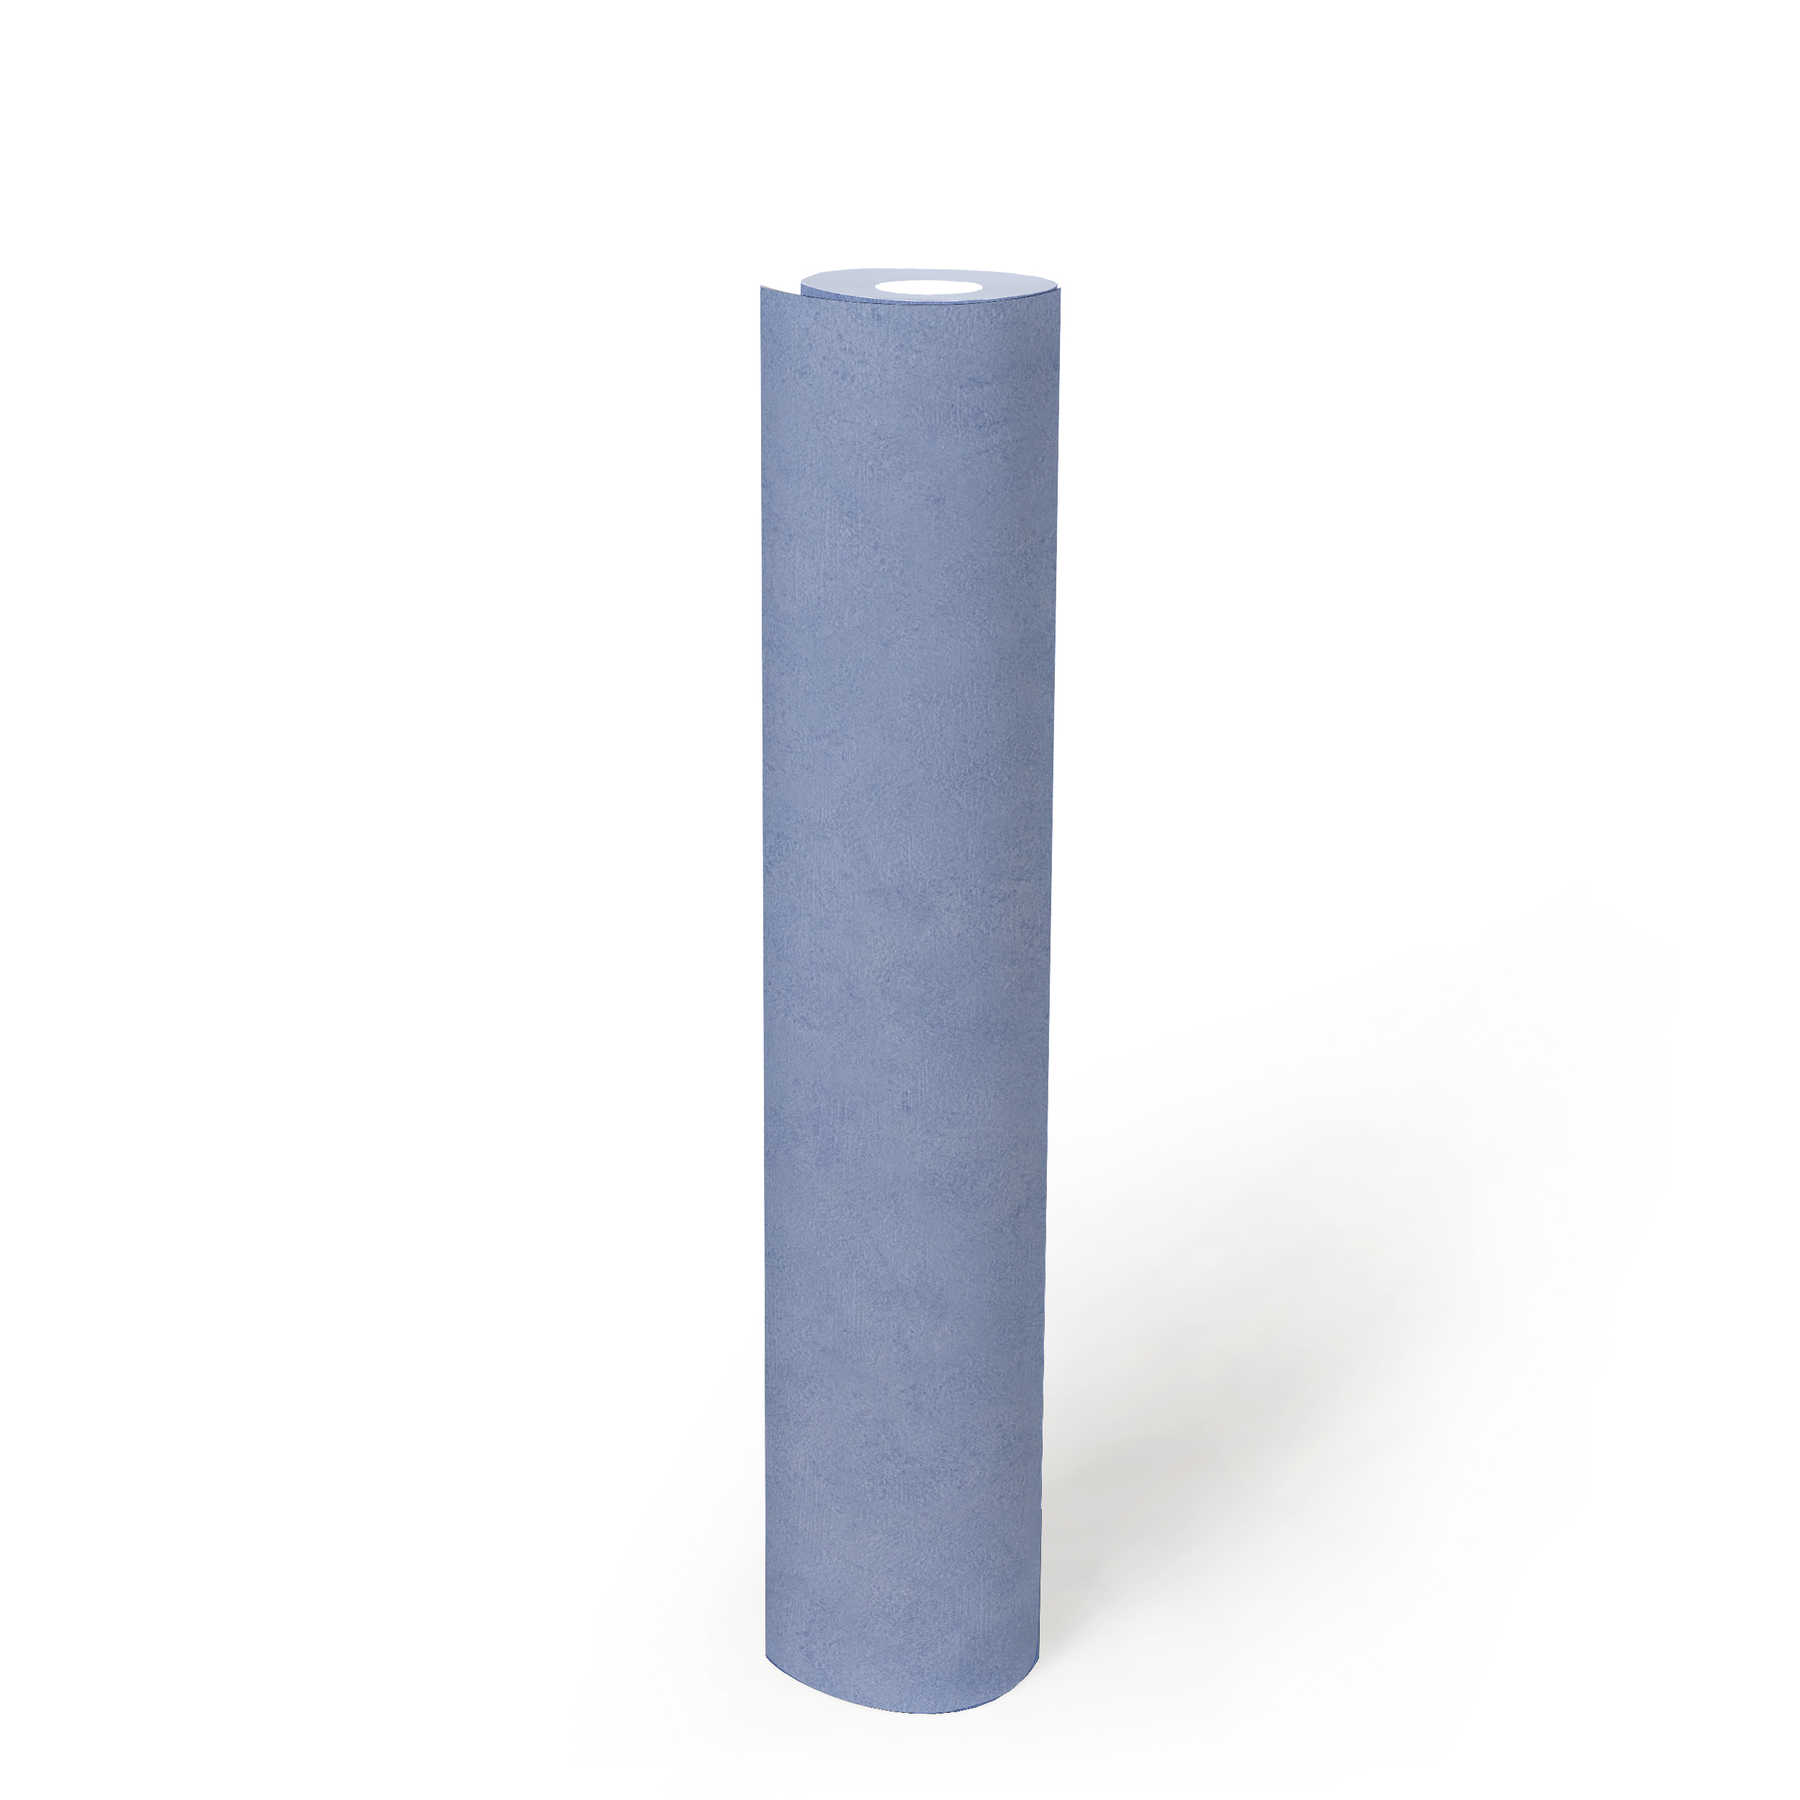             Blaue Papiertapete mit Schraffur & Strukturmuster – Blau
        